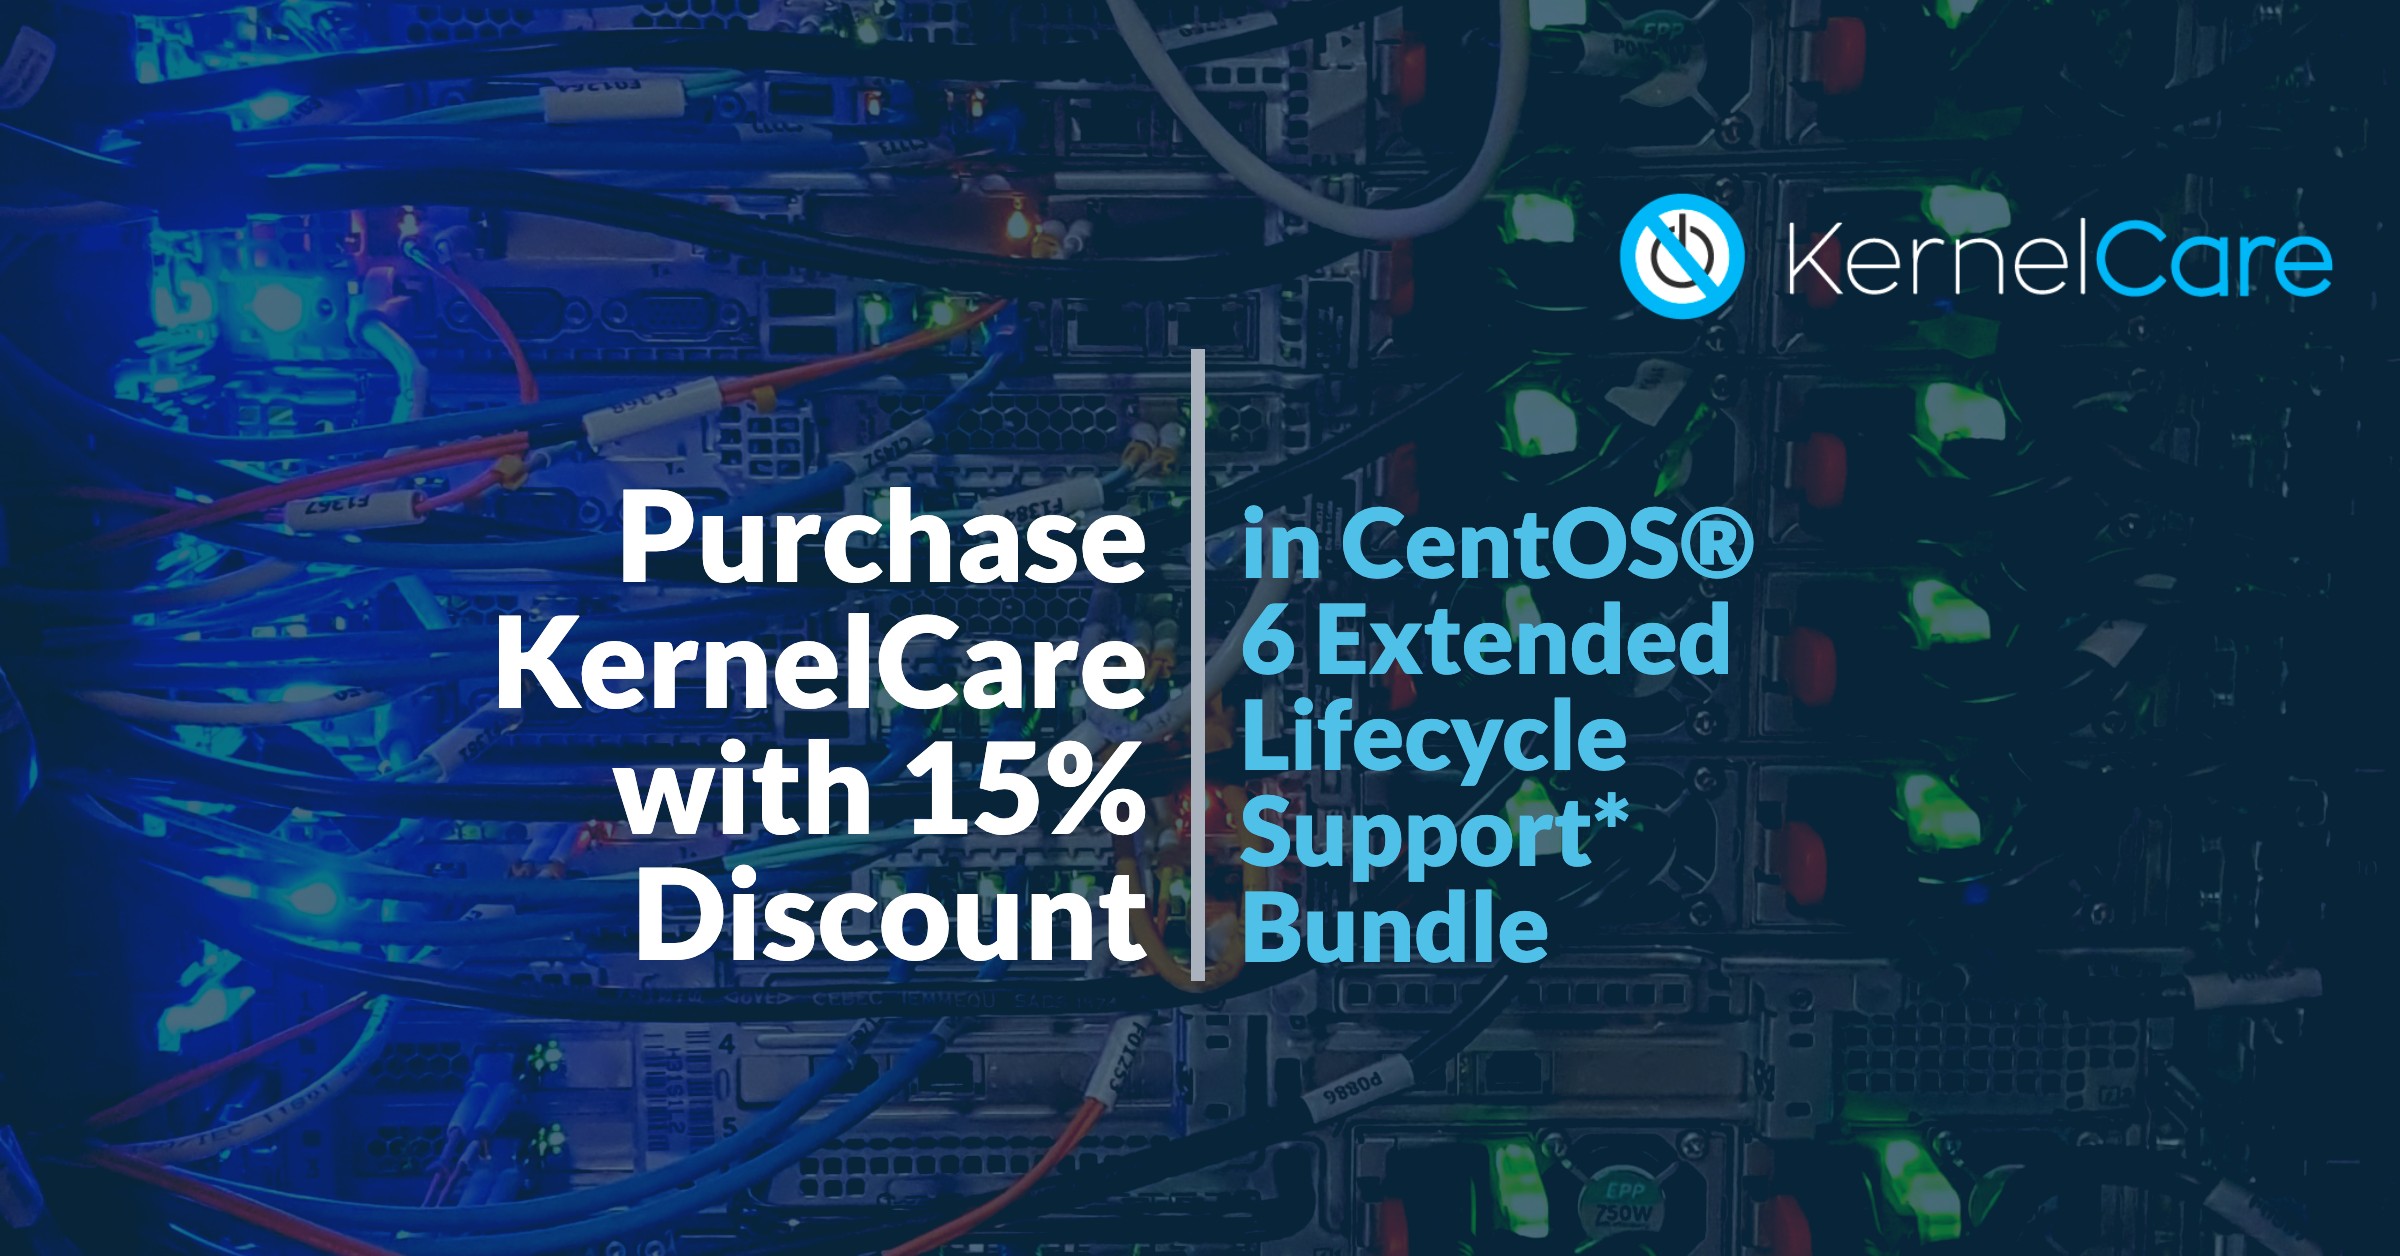 Kaufen Sie KernelCare mit 15% Rabatt im CentOS® 6 Extended Lifecycle Support_ Bundle